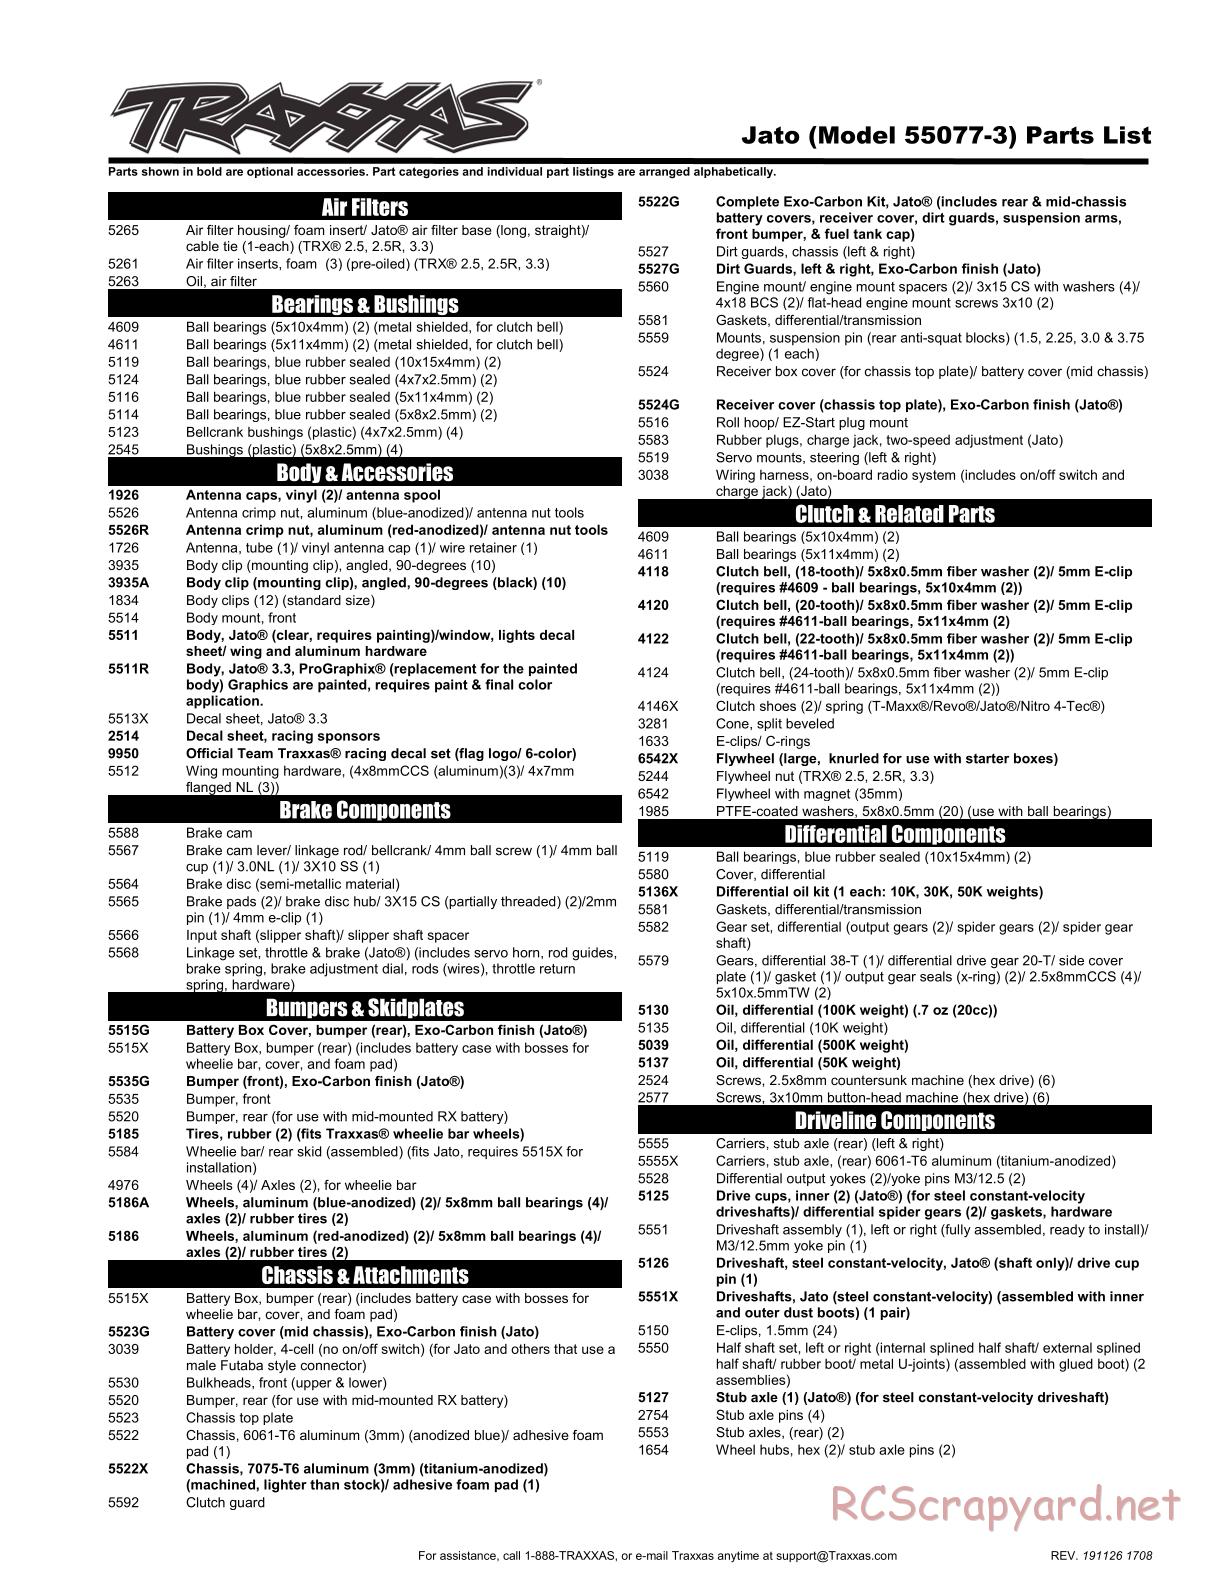 Traxxas - Jato 3.3 TSM - Parts List - Page 1